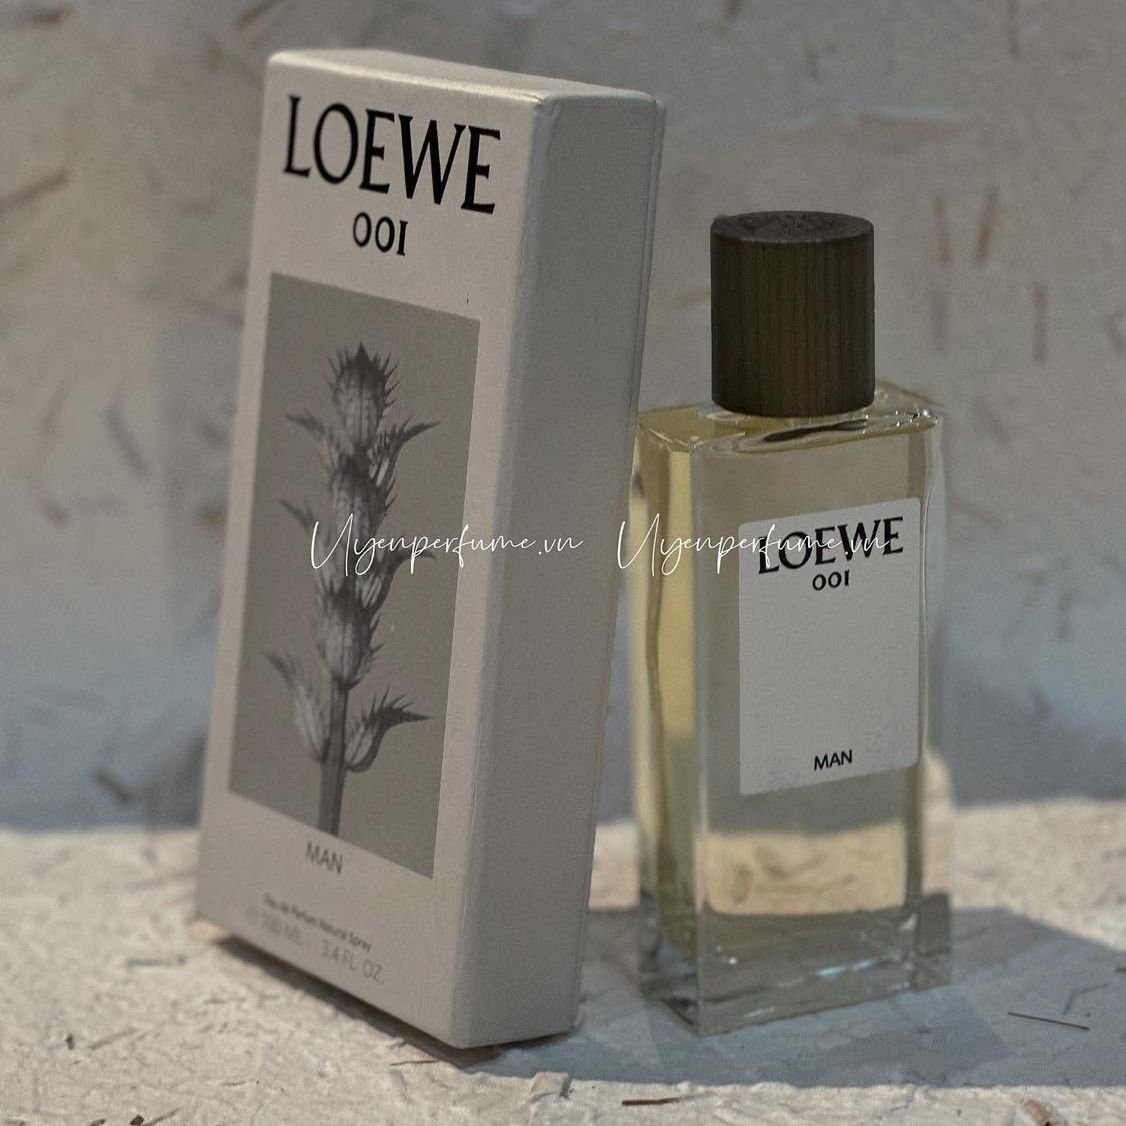  Loewe 001 